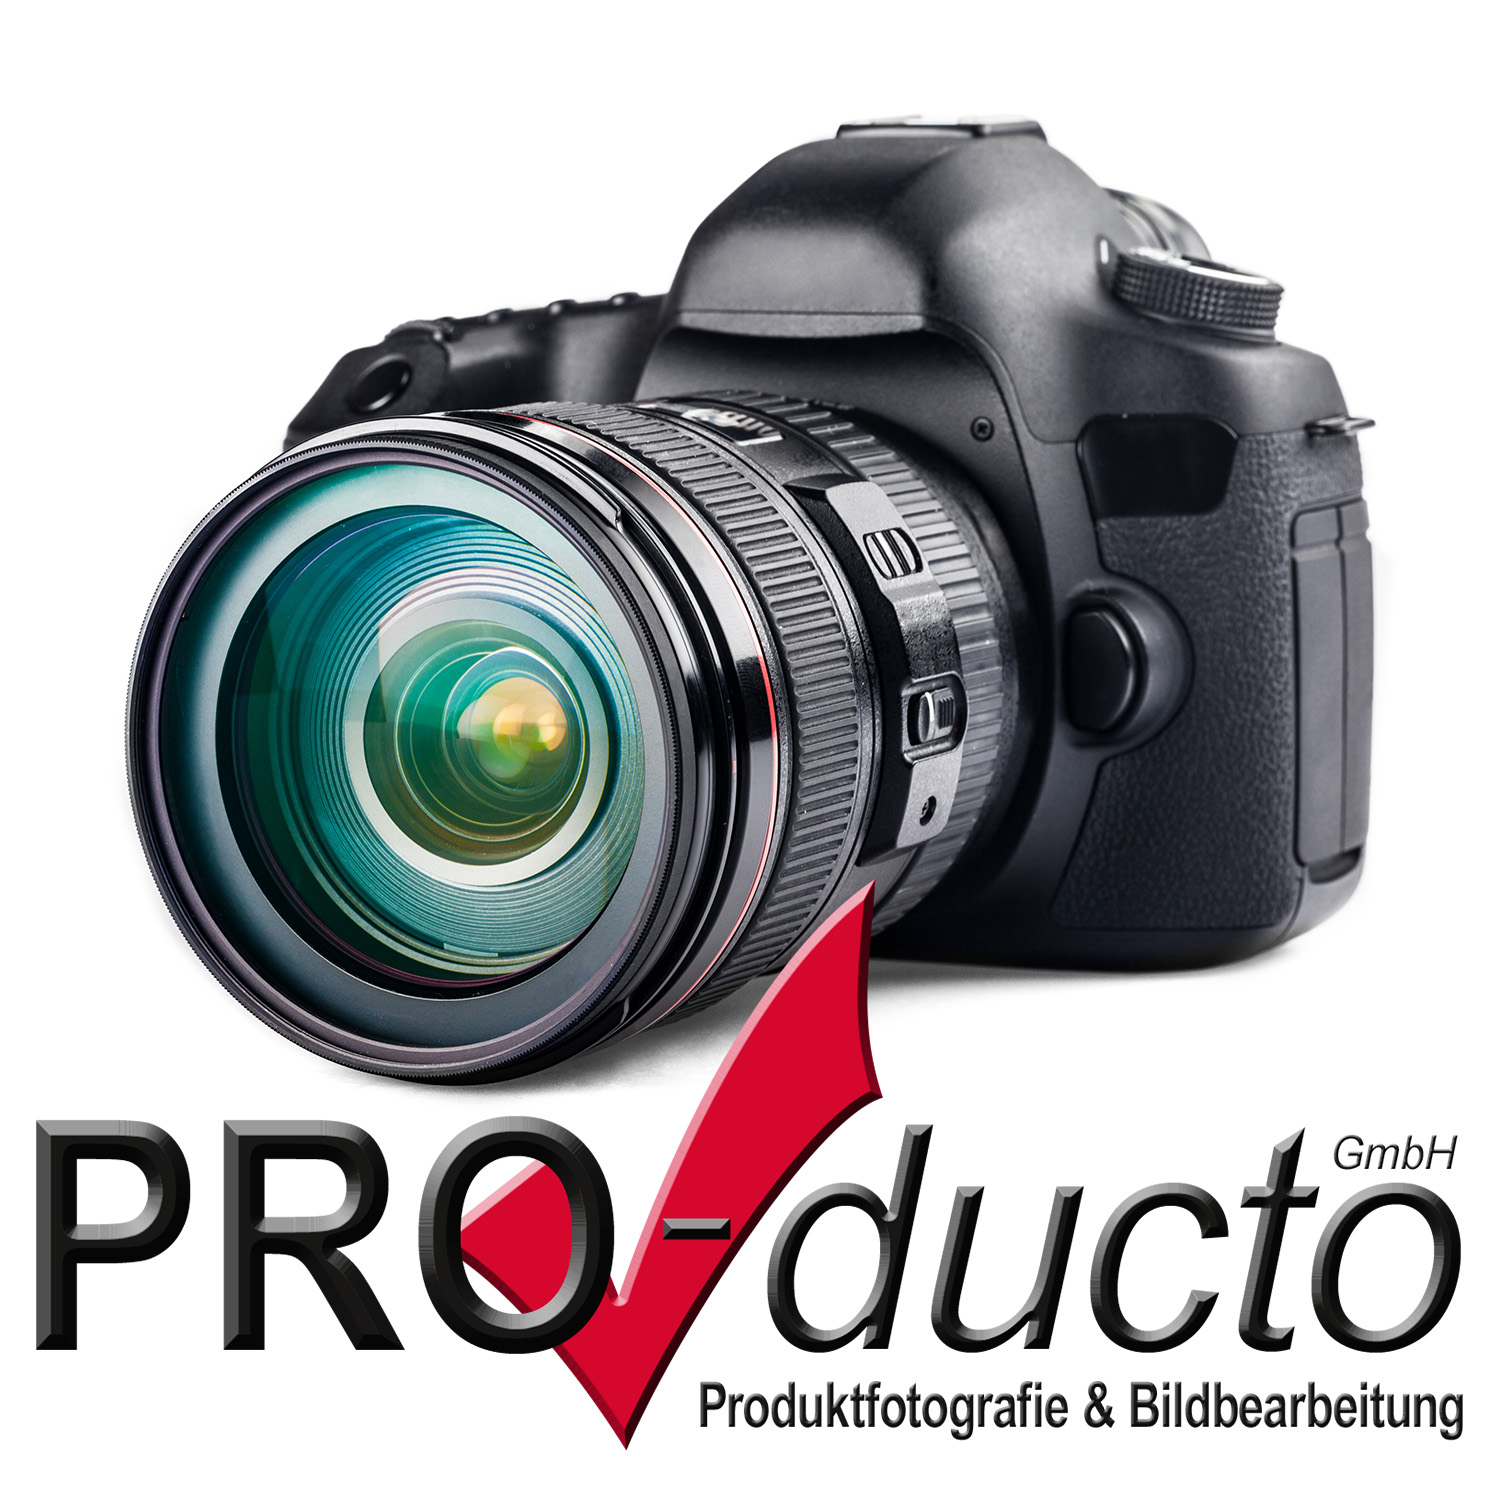 PRO-ducto GmbH in Lichtenau